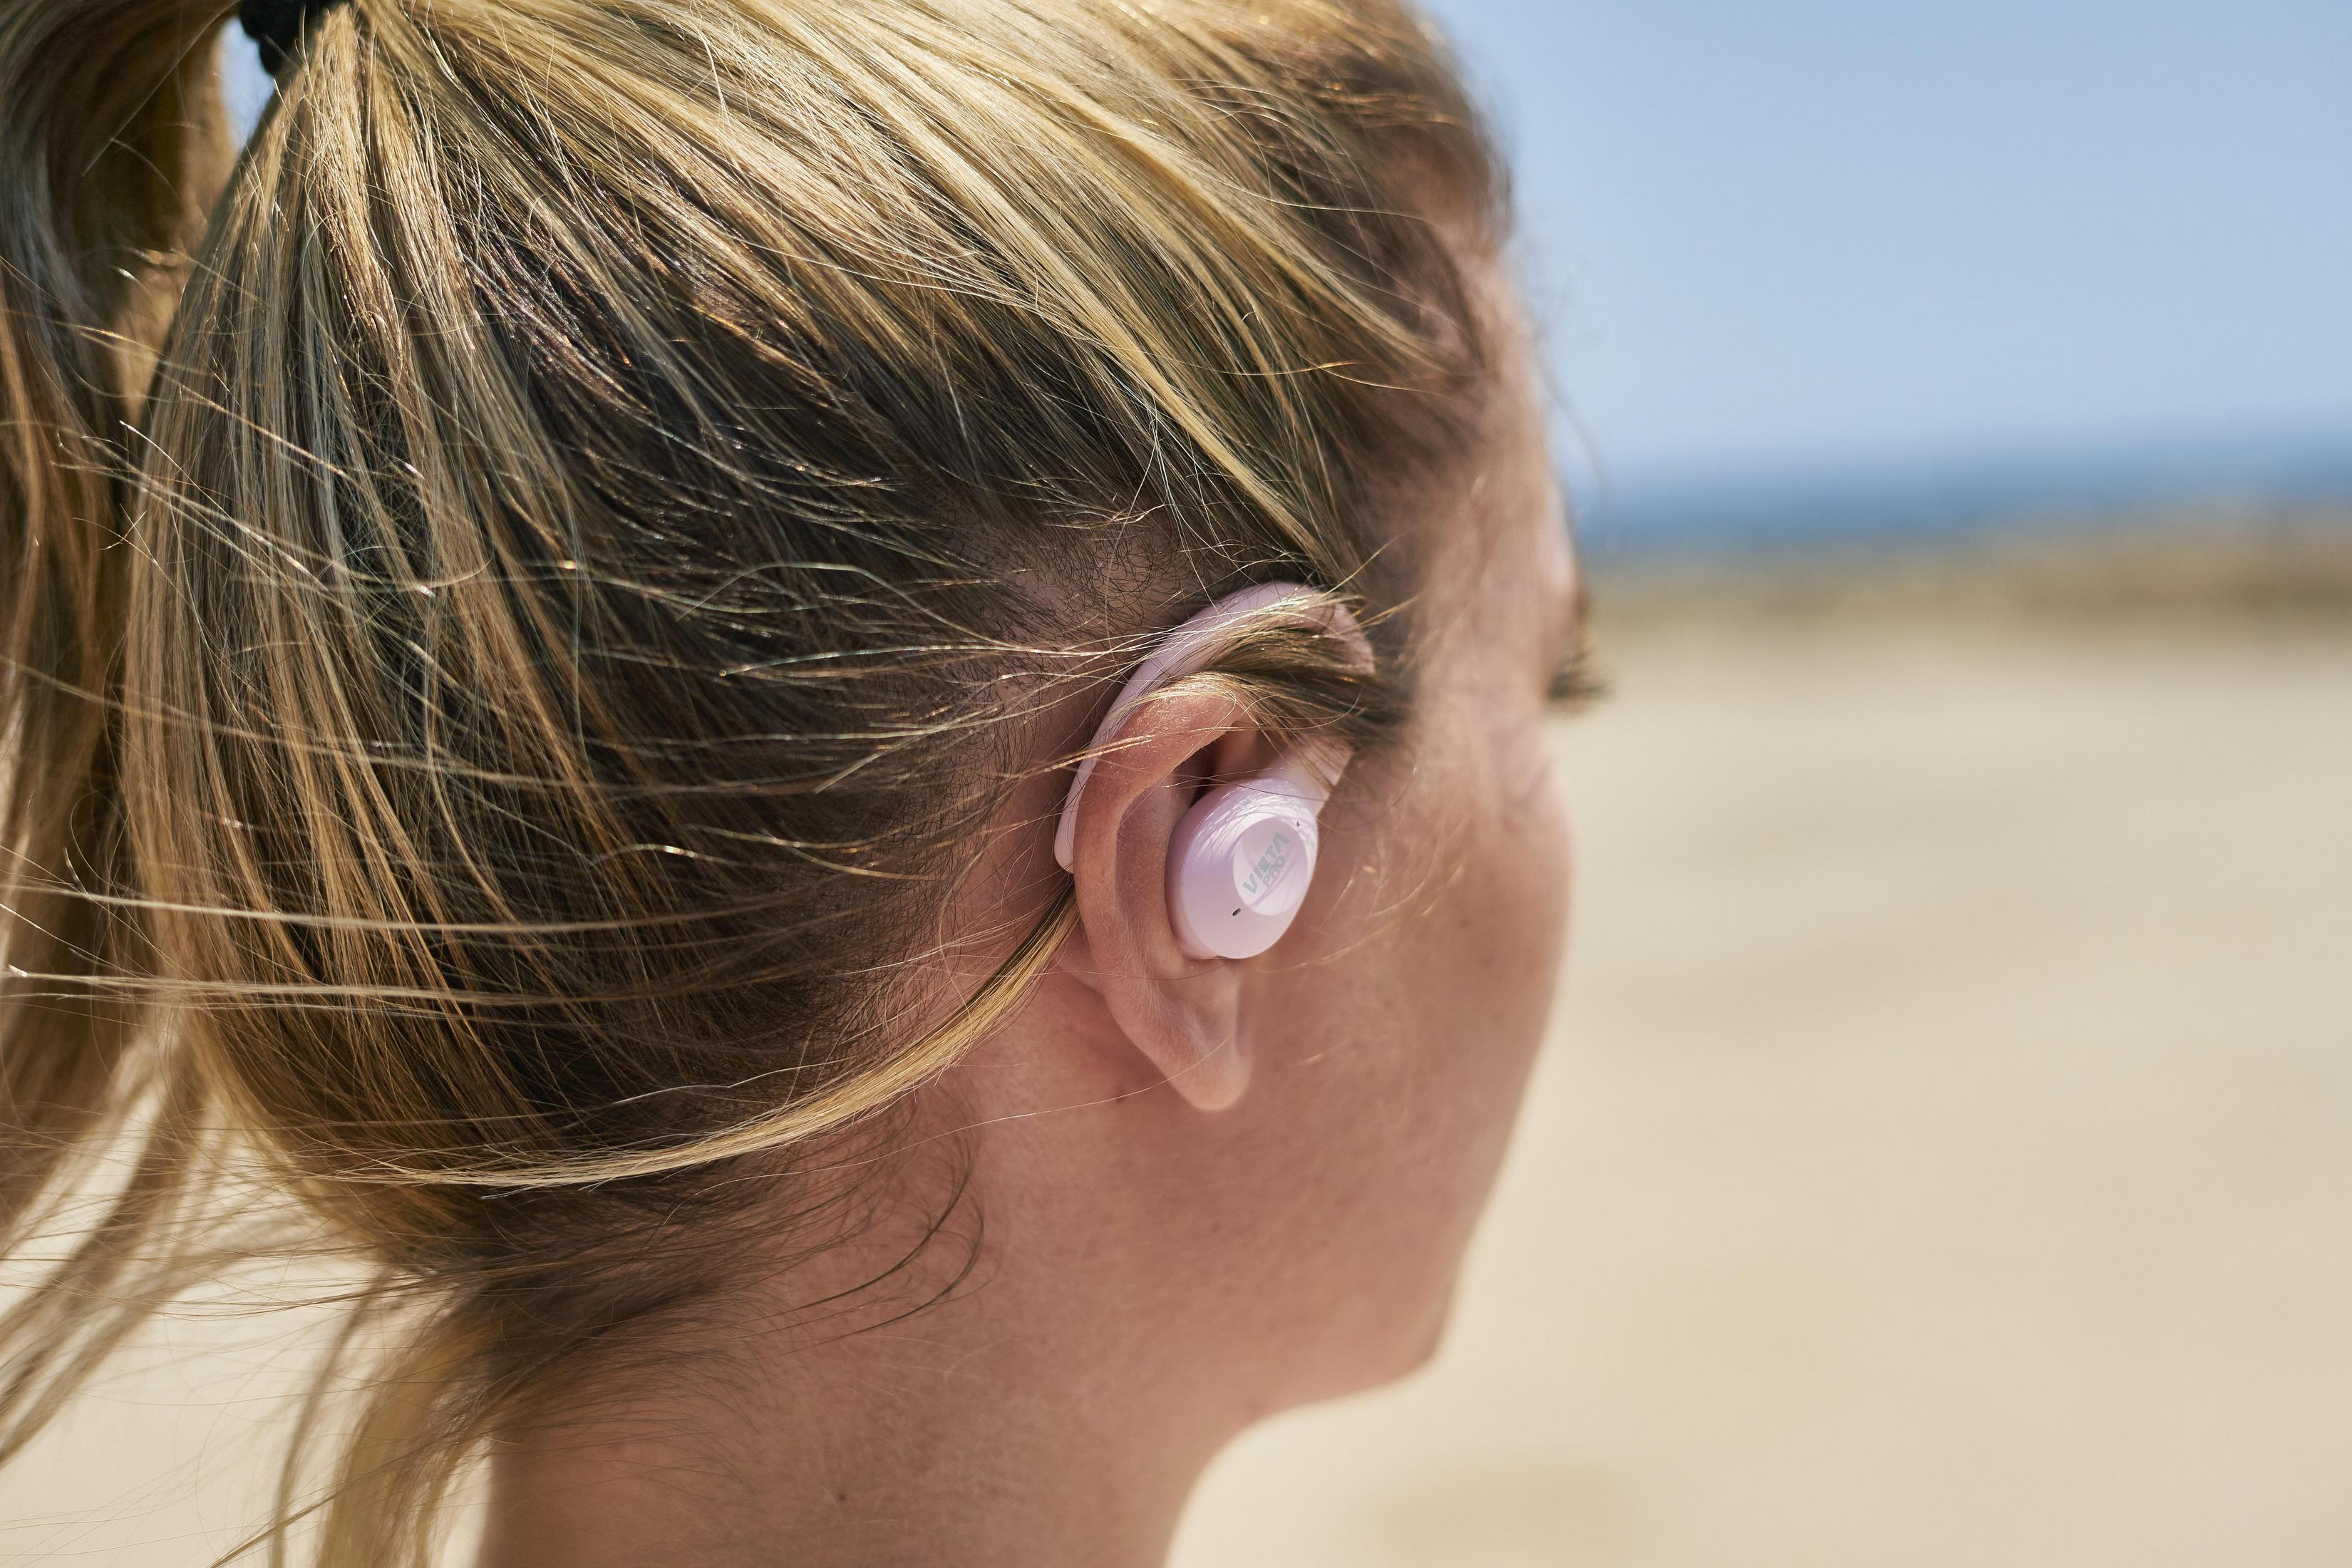 VIETA SWEAT PINK, TWS SPORTS Bluetooth In-ear Pink Kopfhörer